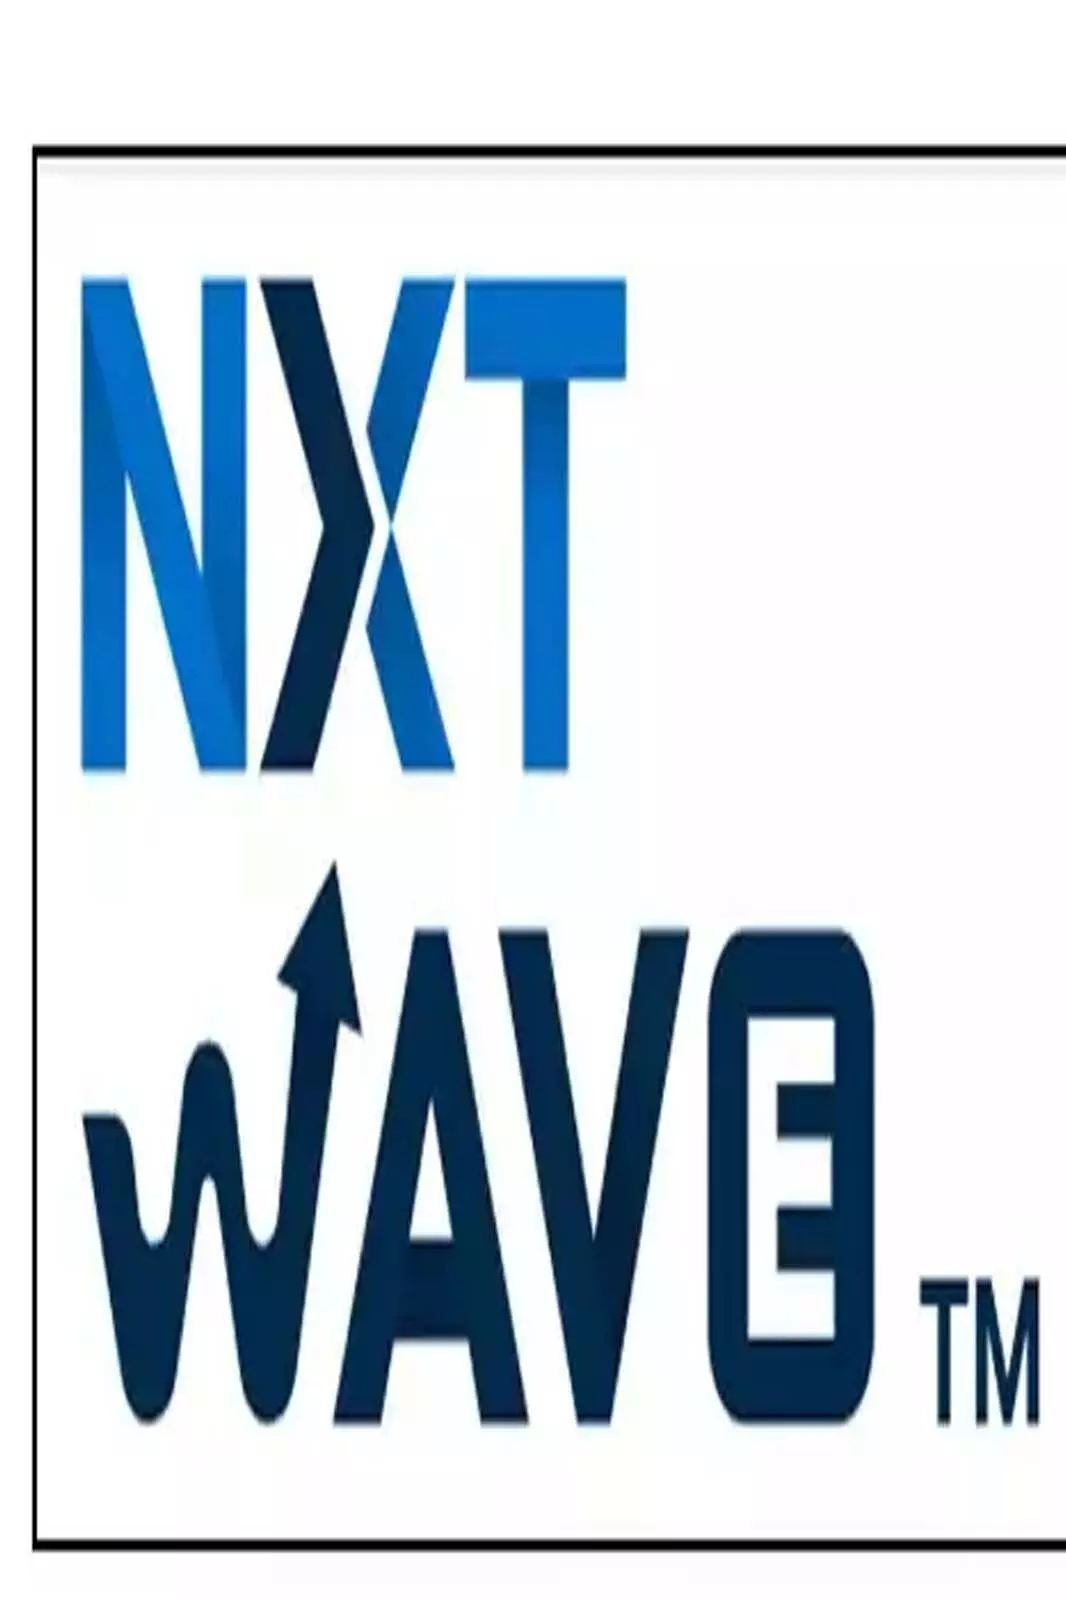 NxtWave is an exclusive: NxtWave देश भर में सिर्फ़ 10 स्टार्टअप के एक खास group